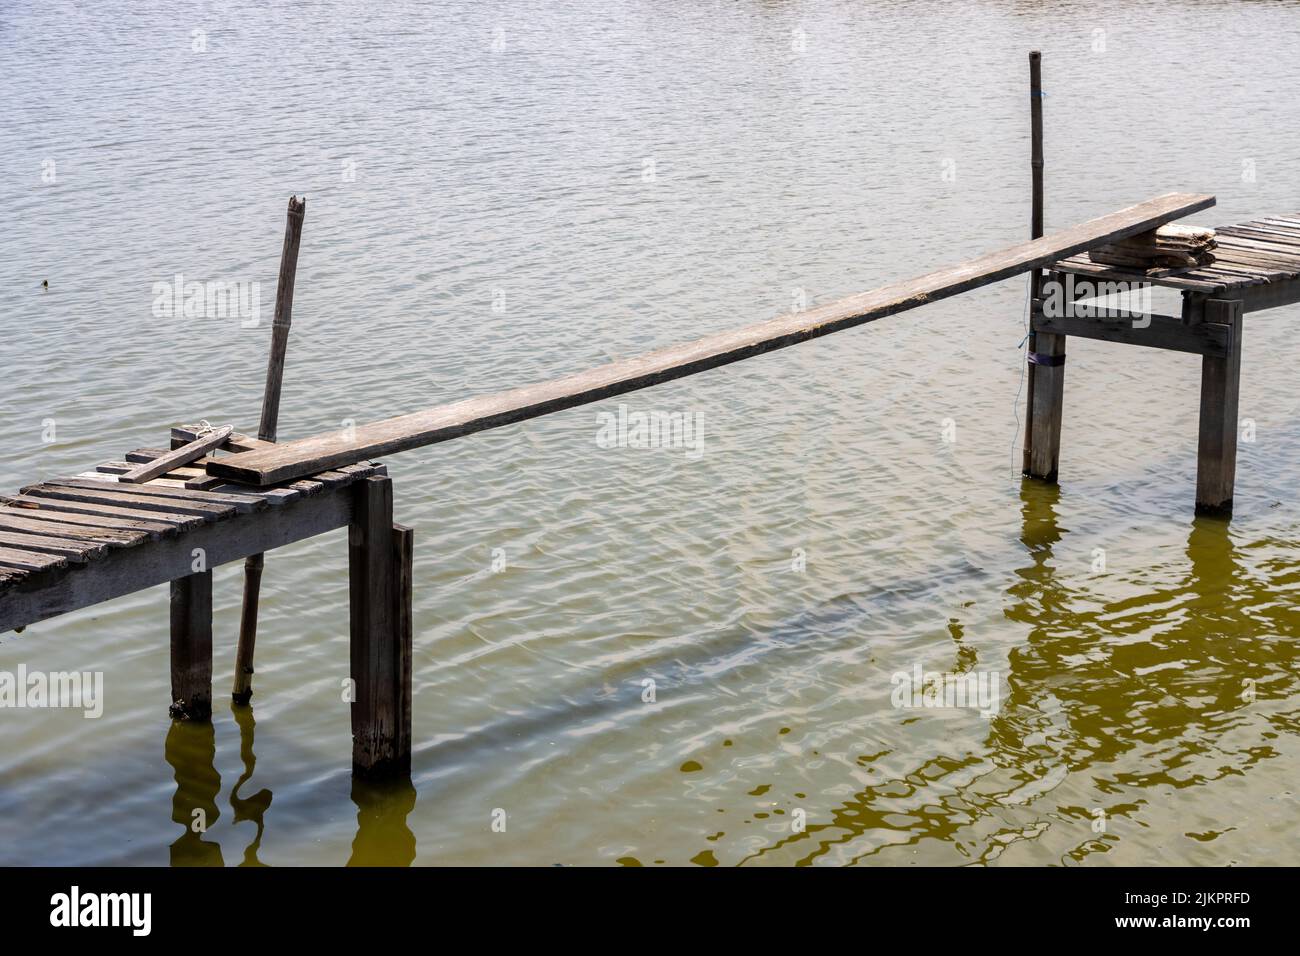 El tablero conecta los dos extremos de un puente de madera Foto de stock